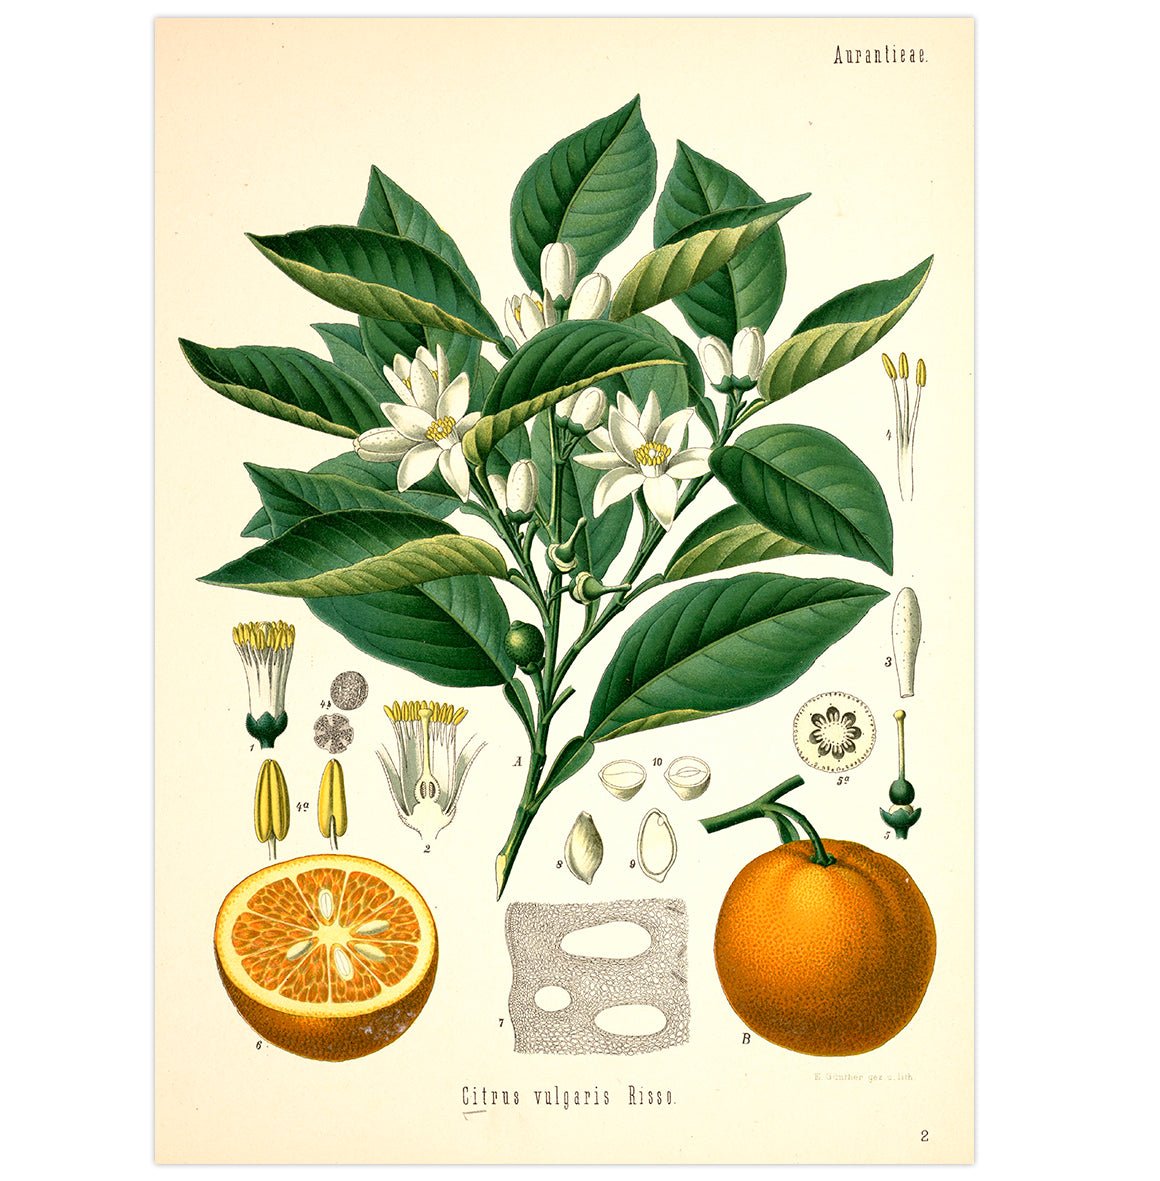 Mini poster adhesivo y reposicionable: Flores medicinales - Tienda Pasquín